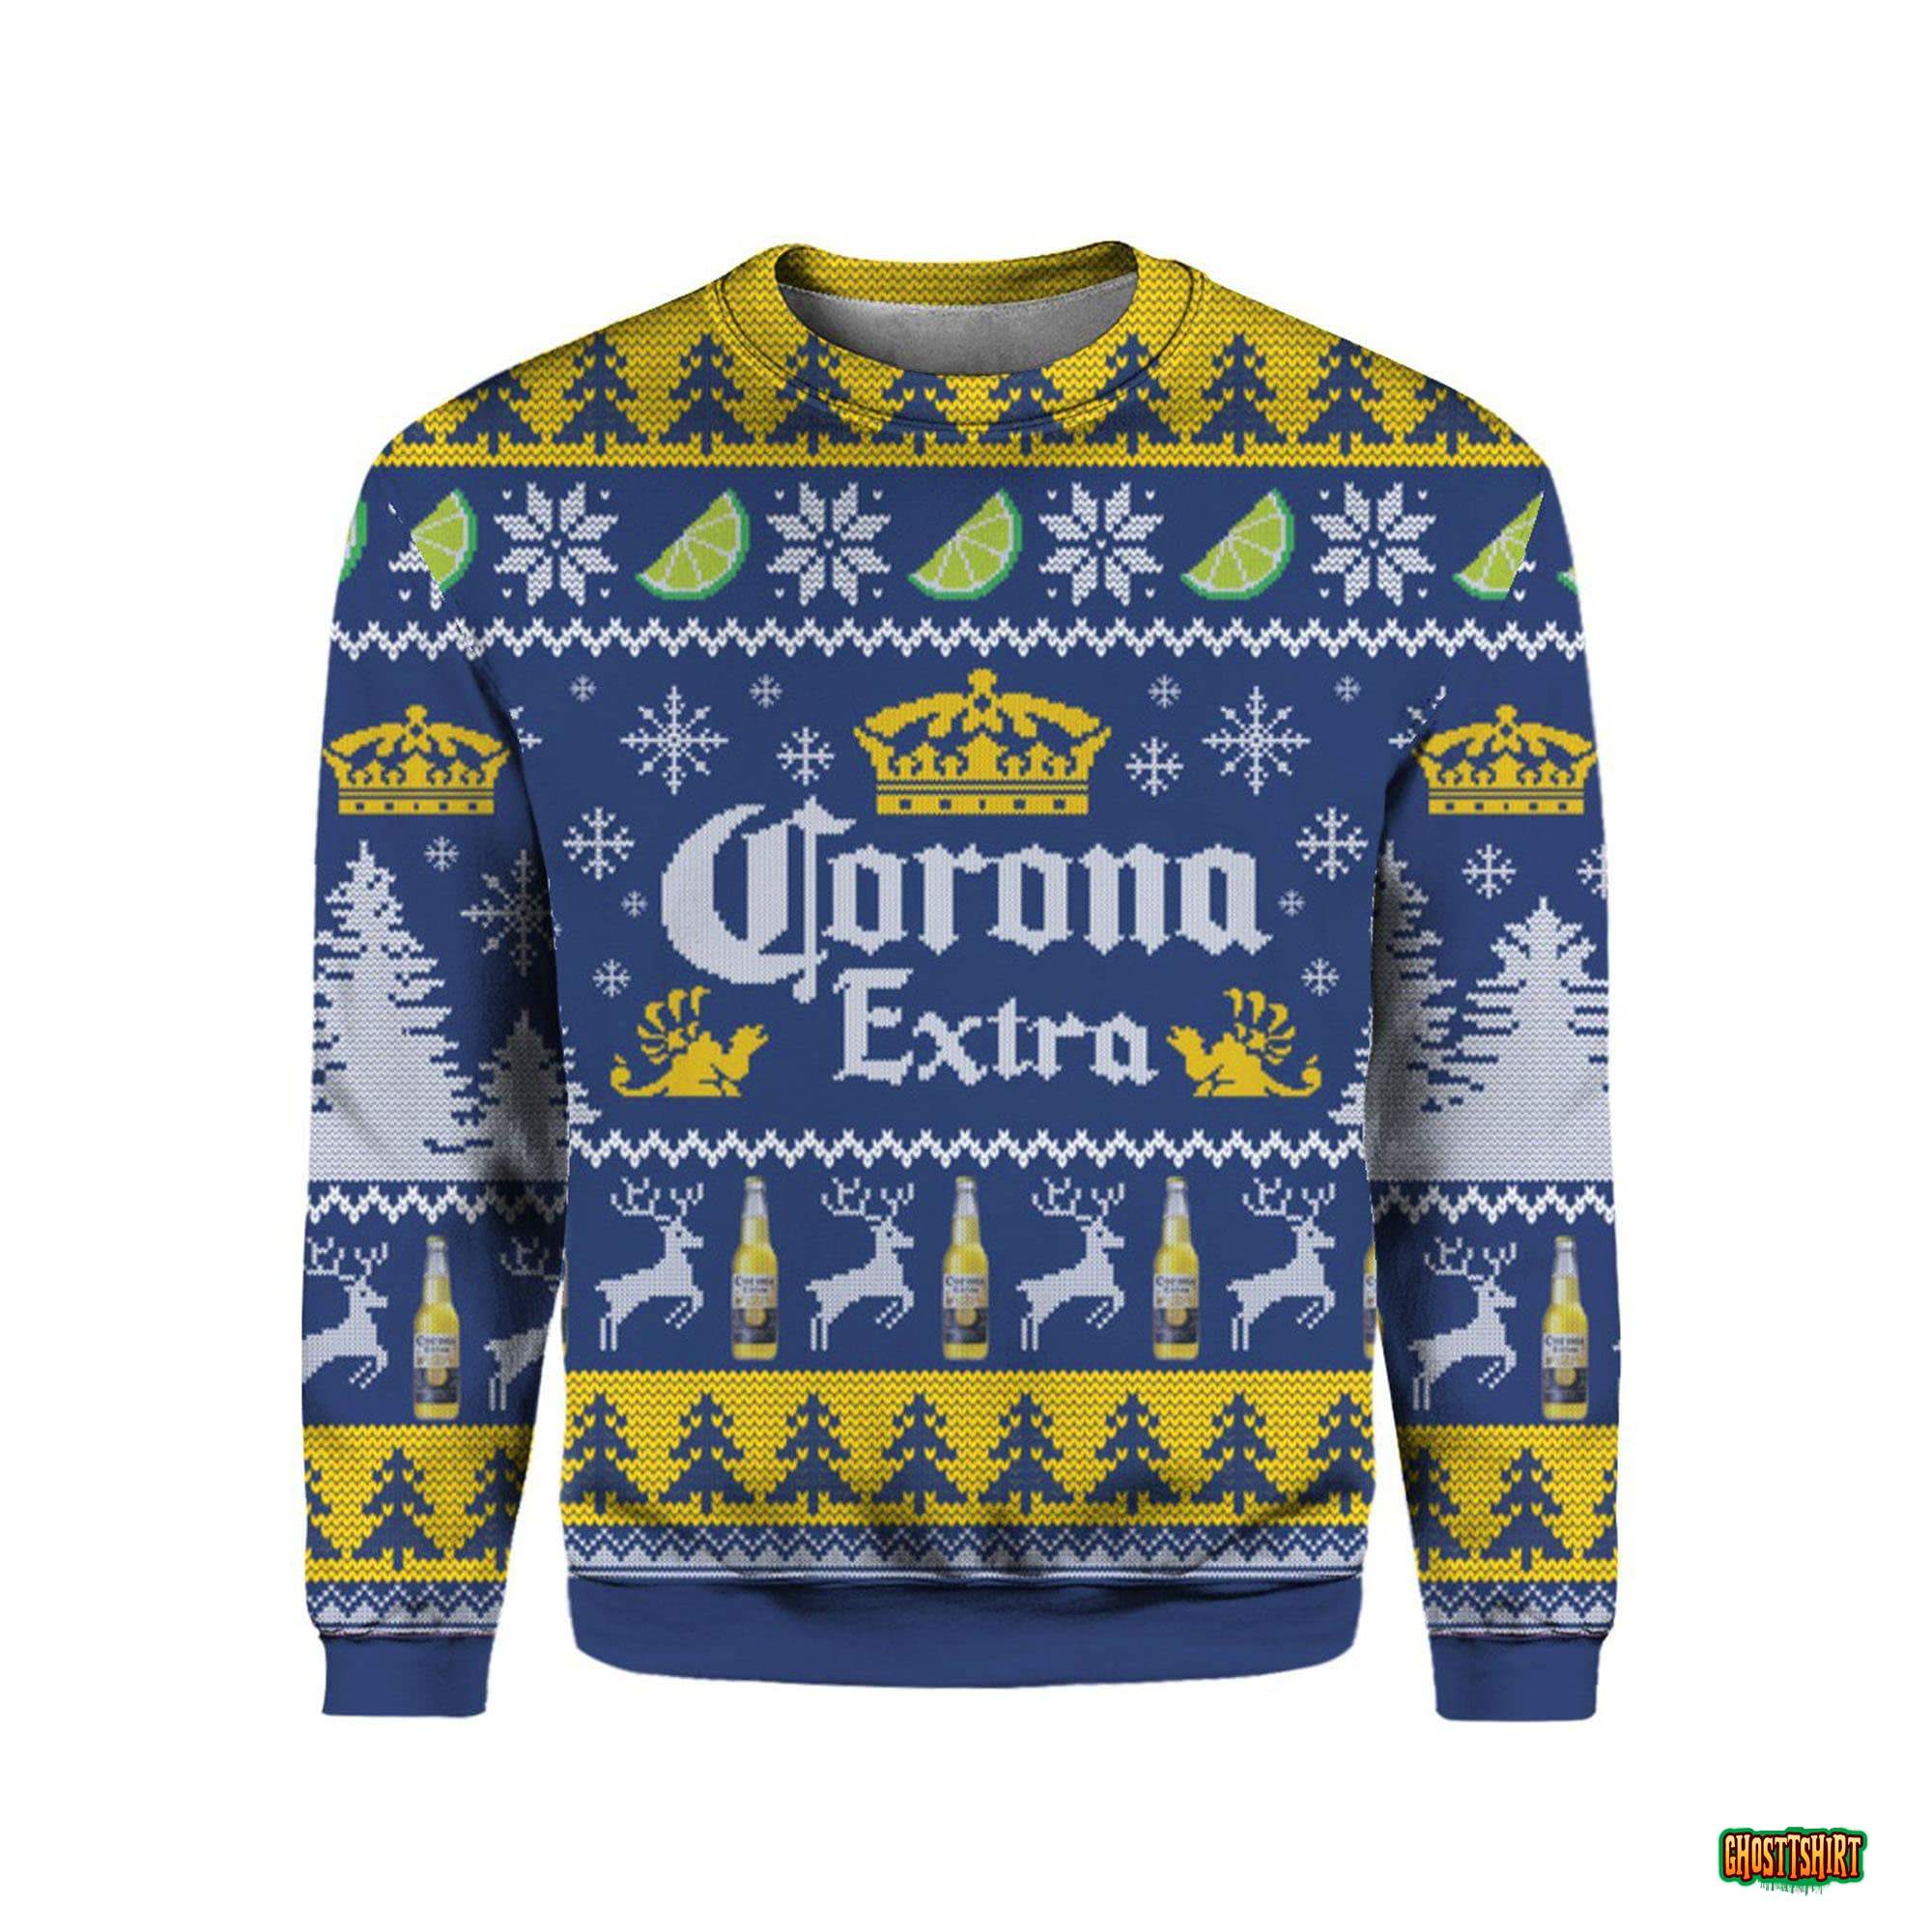 Coronas Extra Beer Christmas Ugly Sweater